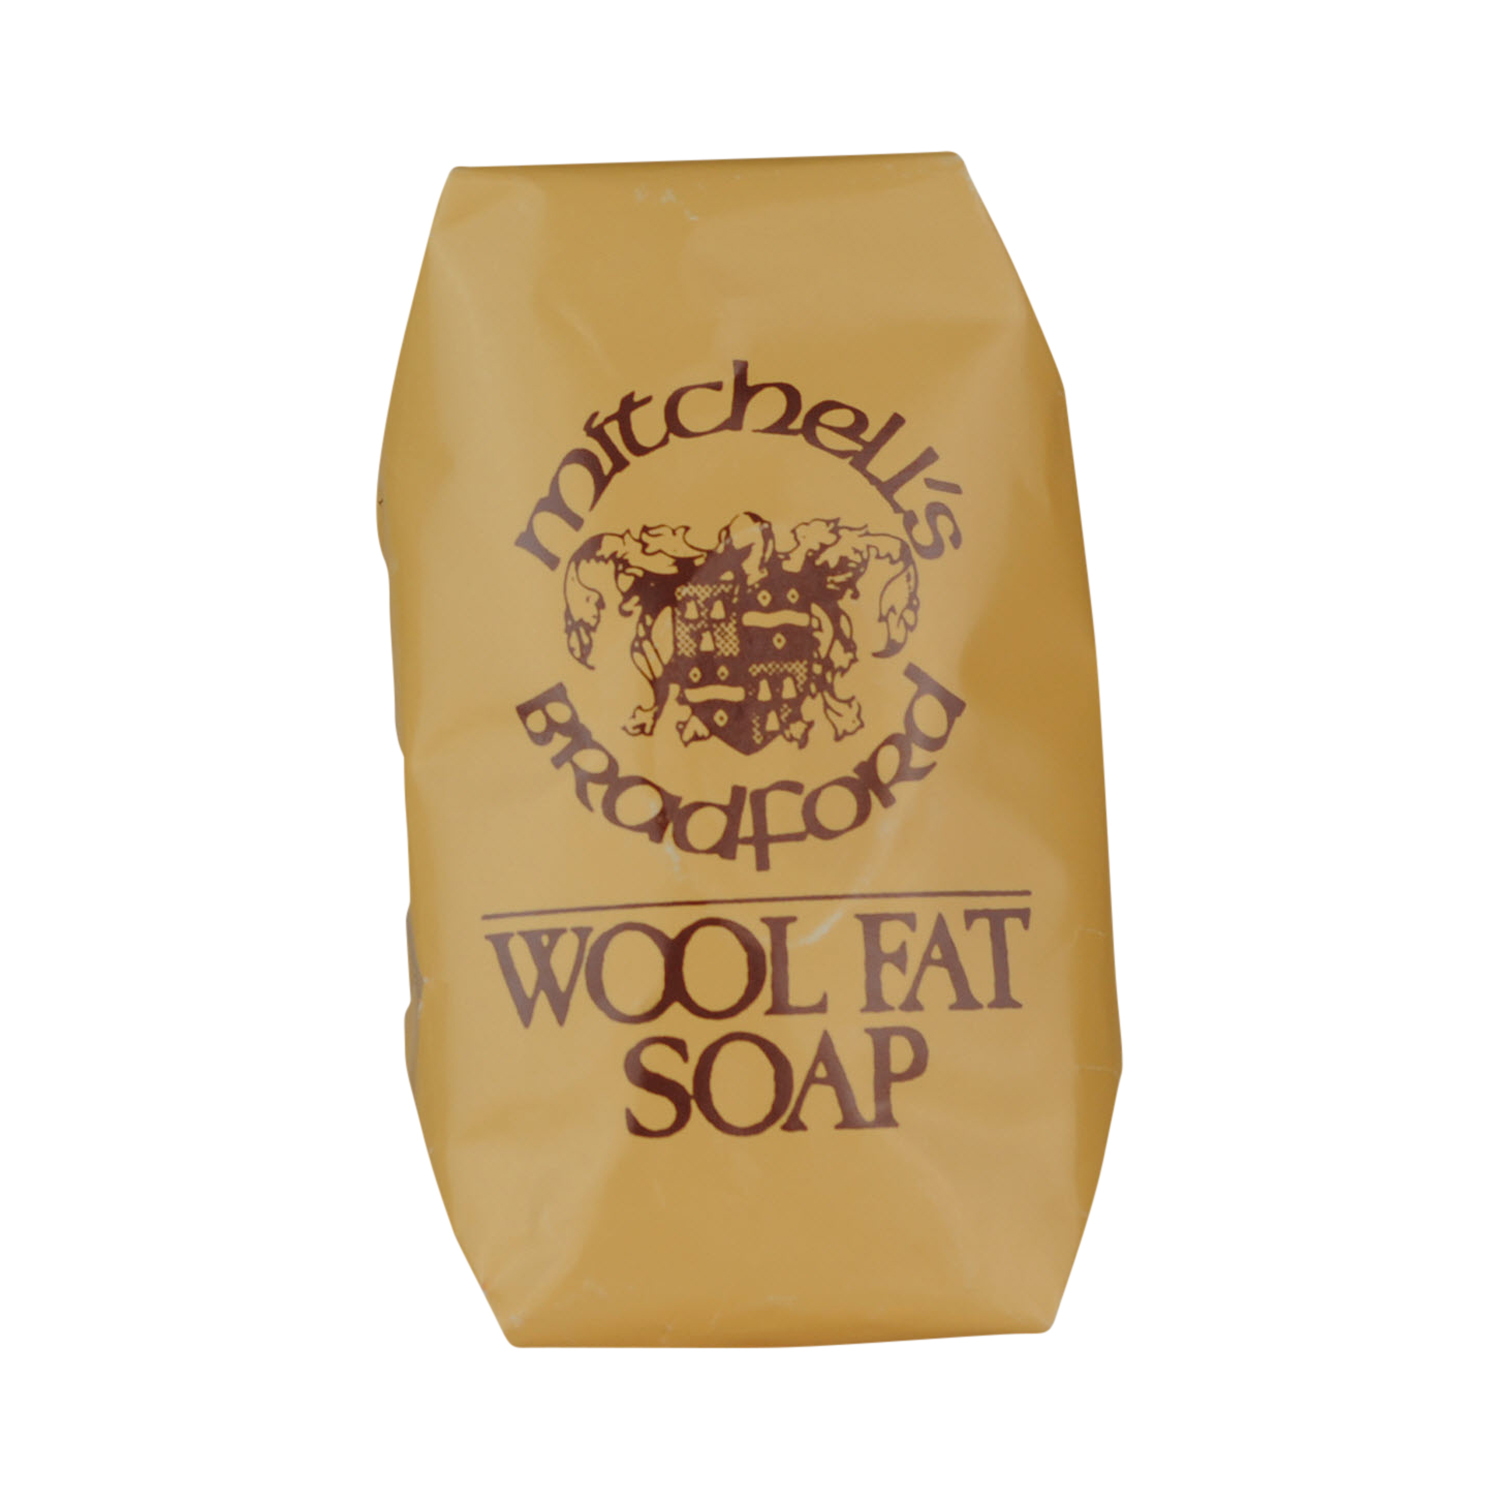 Mitchell's - Wool Fat Original Bath Soap - Körperseife